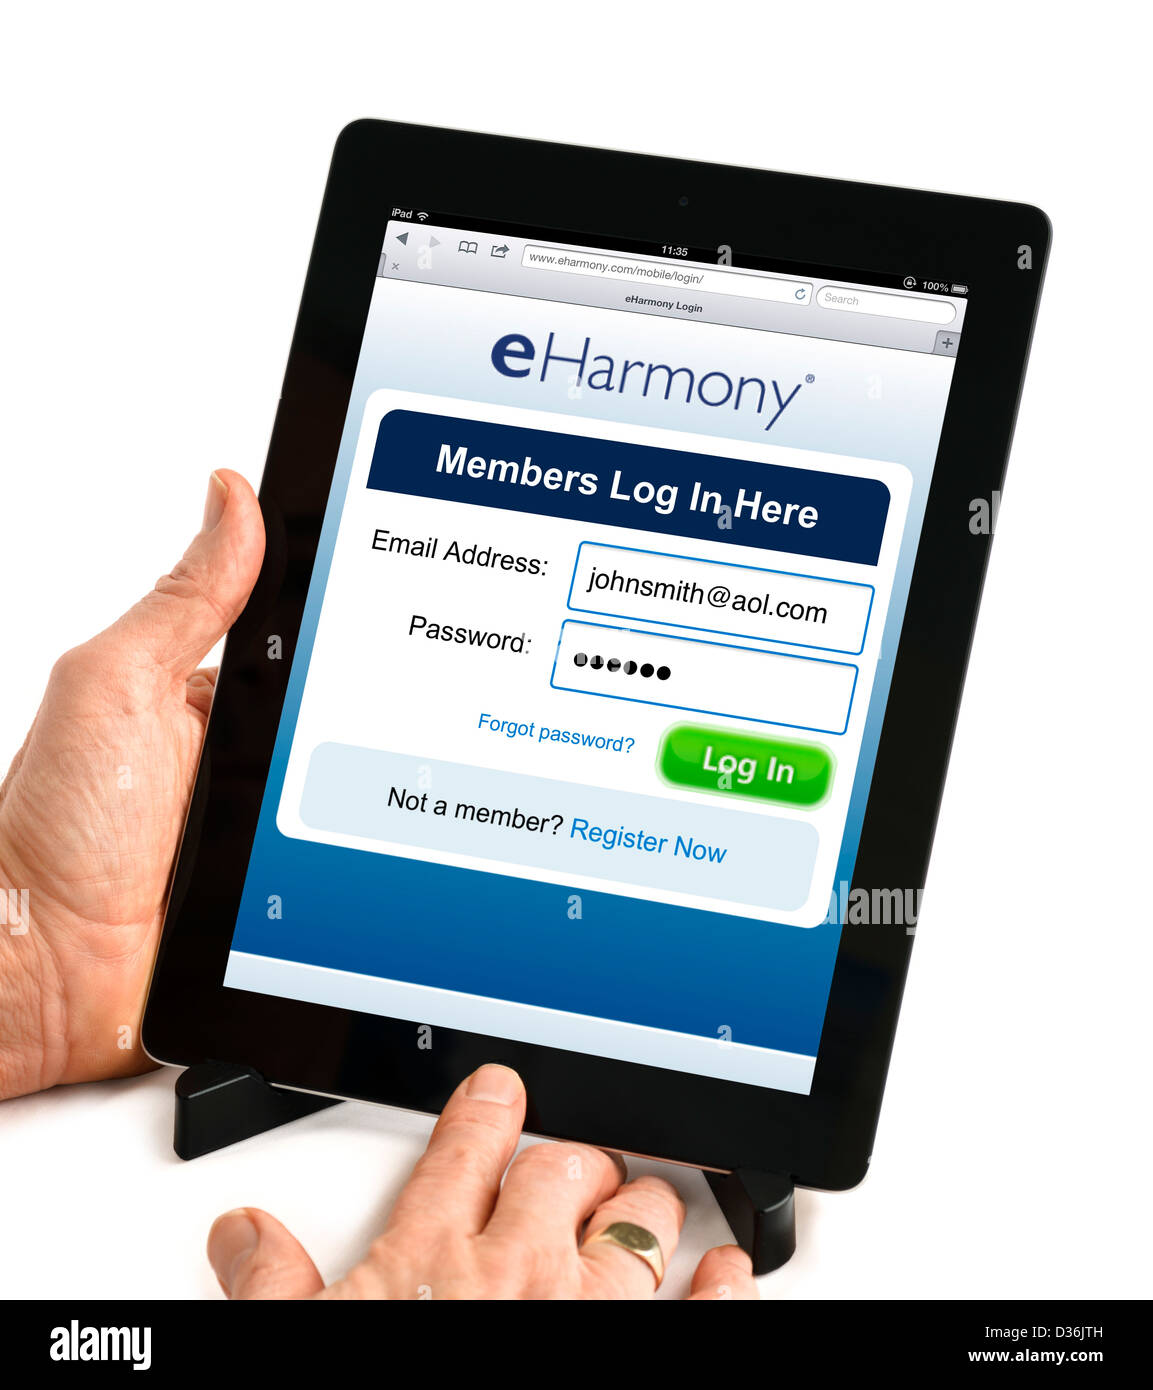 Écran de connexion du site de rencontres en ligne eHarmony.com sur une 4ème génération d'Apple iPad, USA Banque D'Images